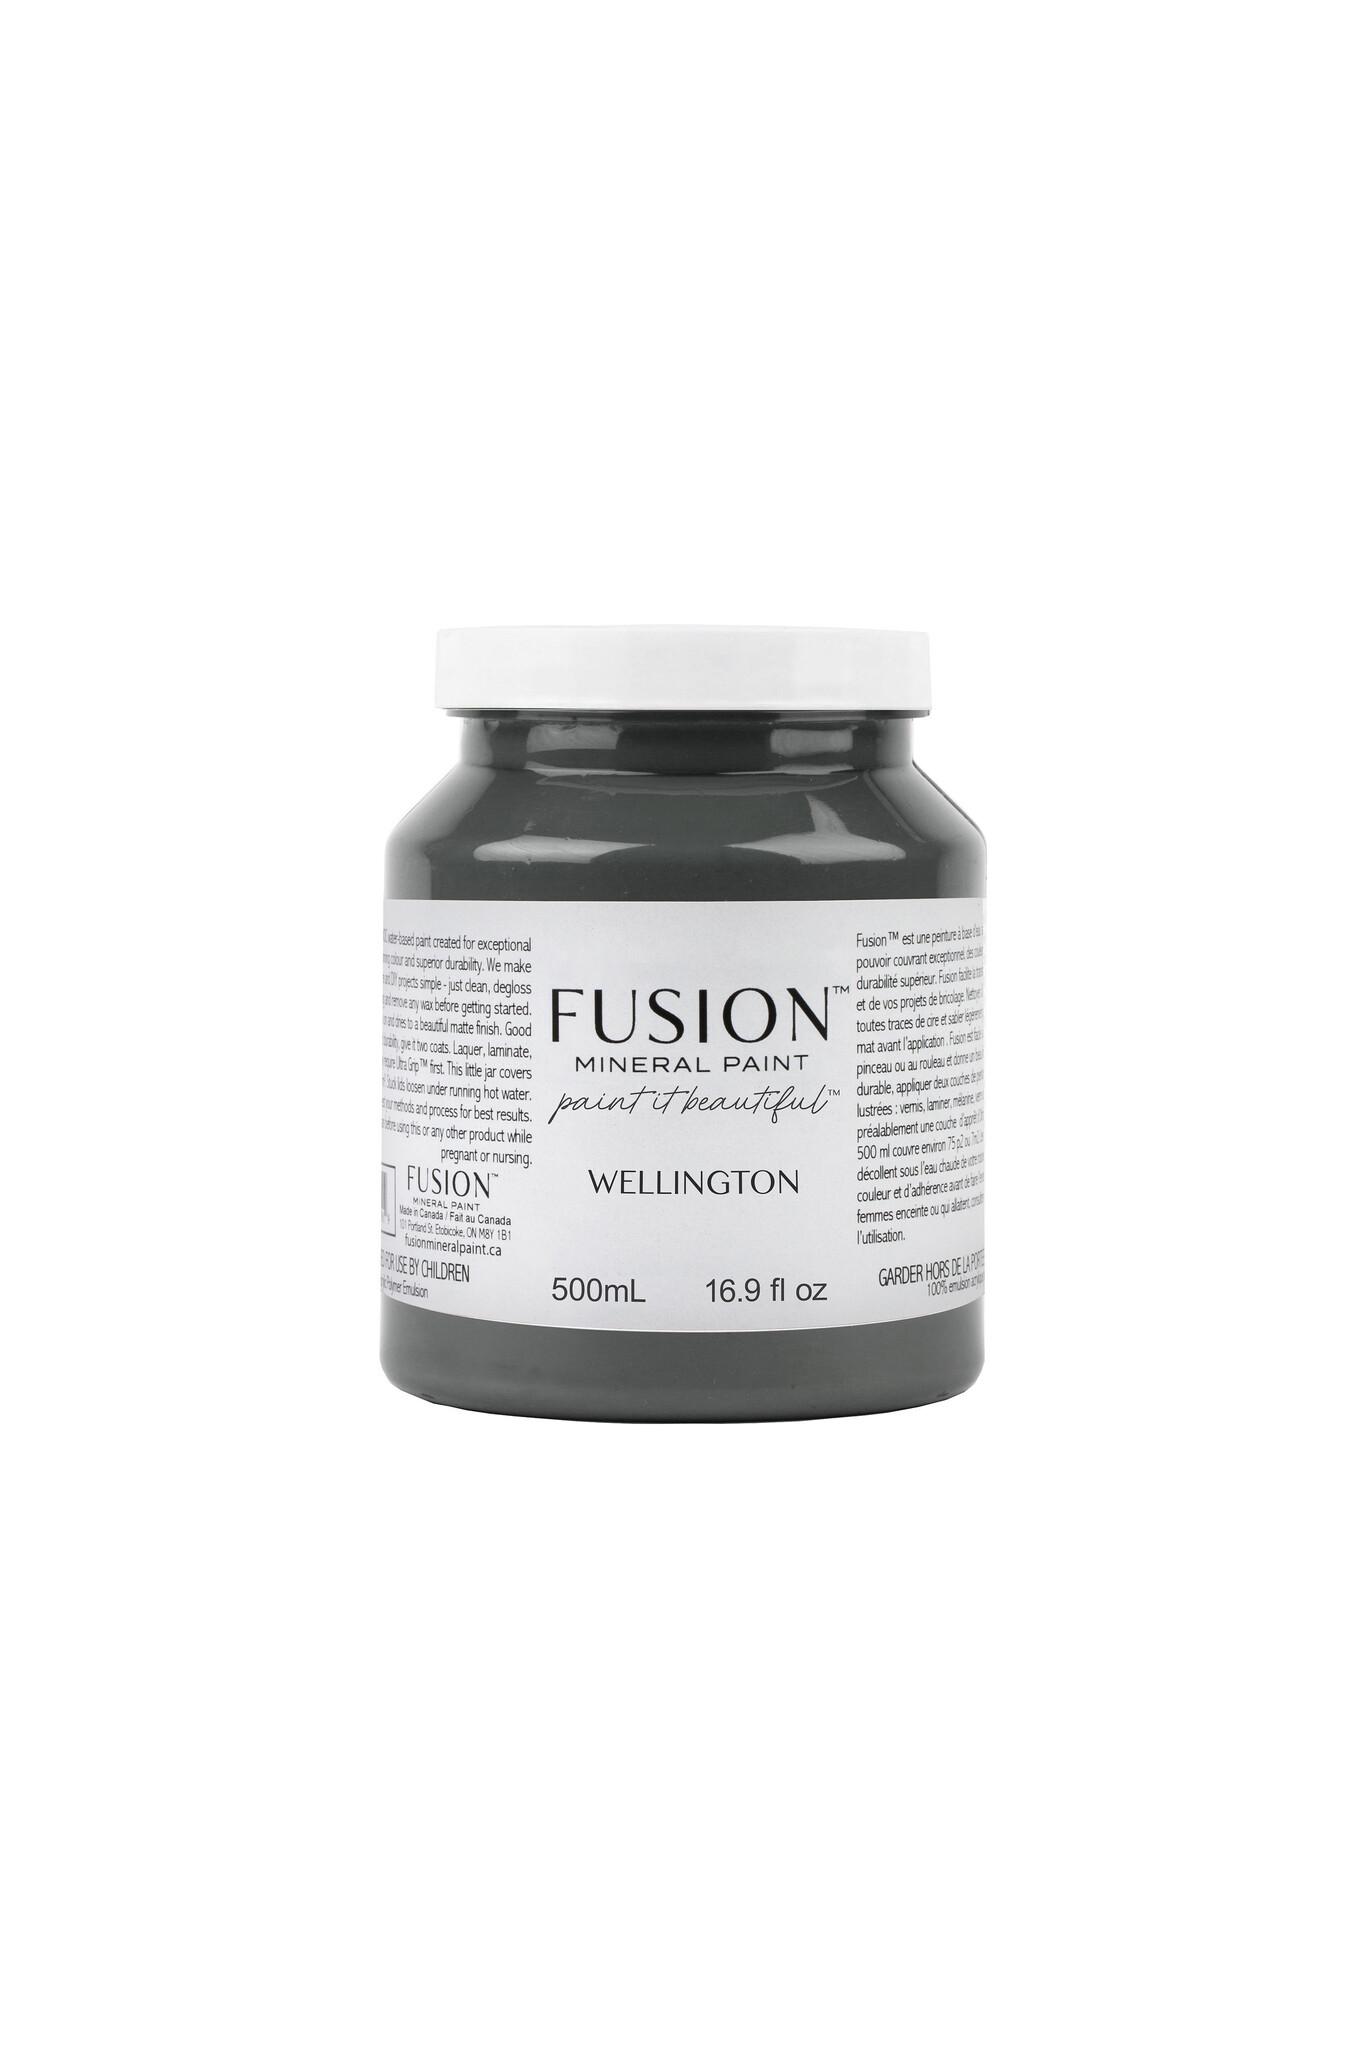 Fusion - Wellington - 500ml